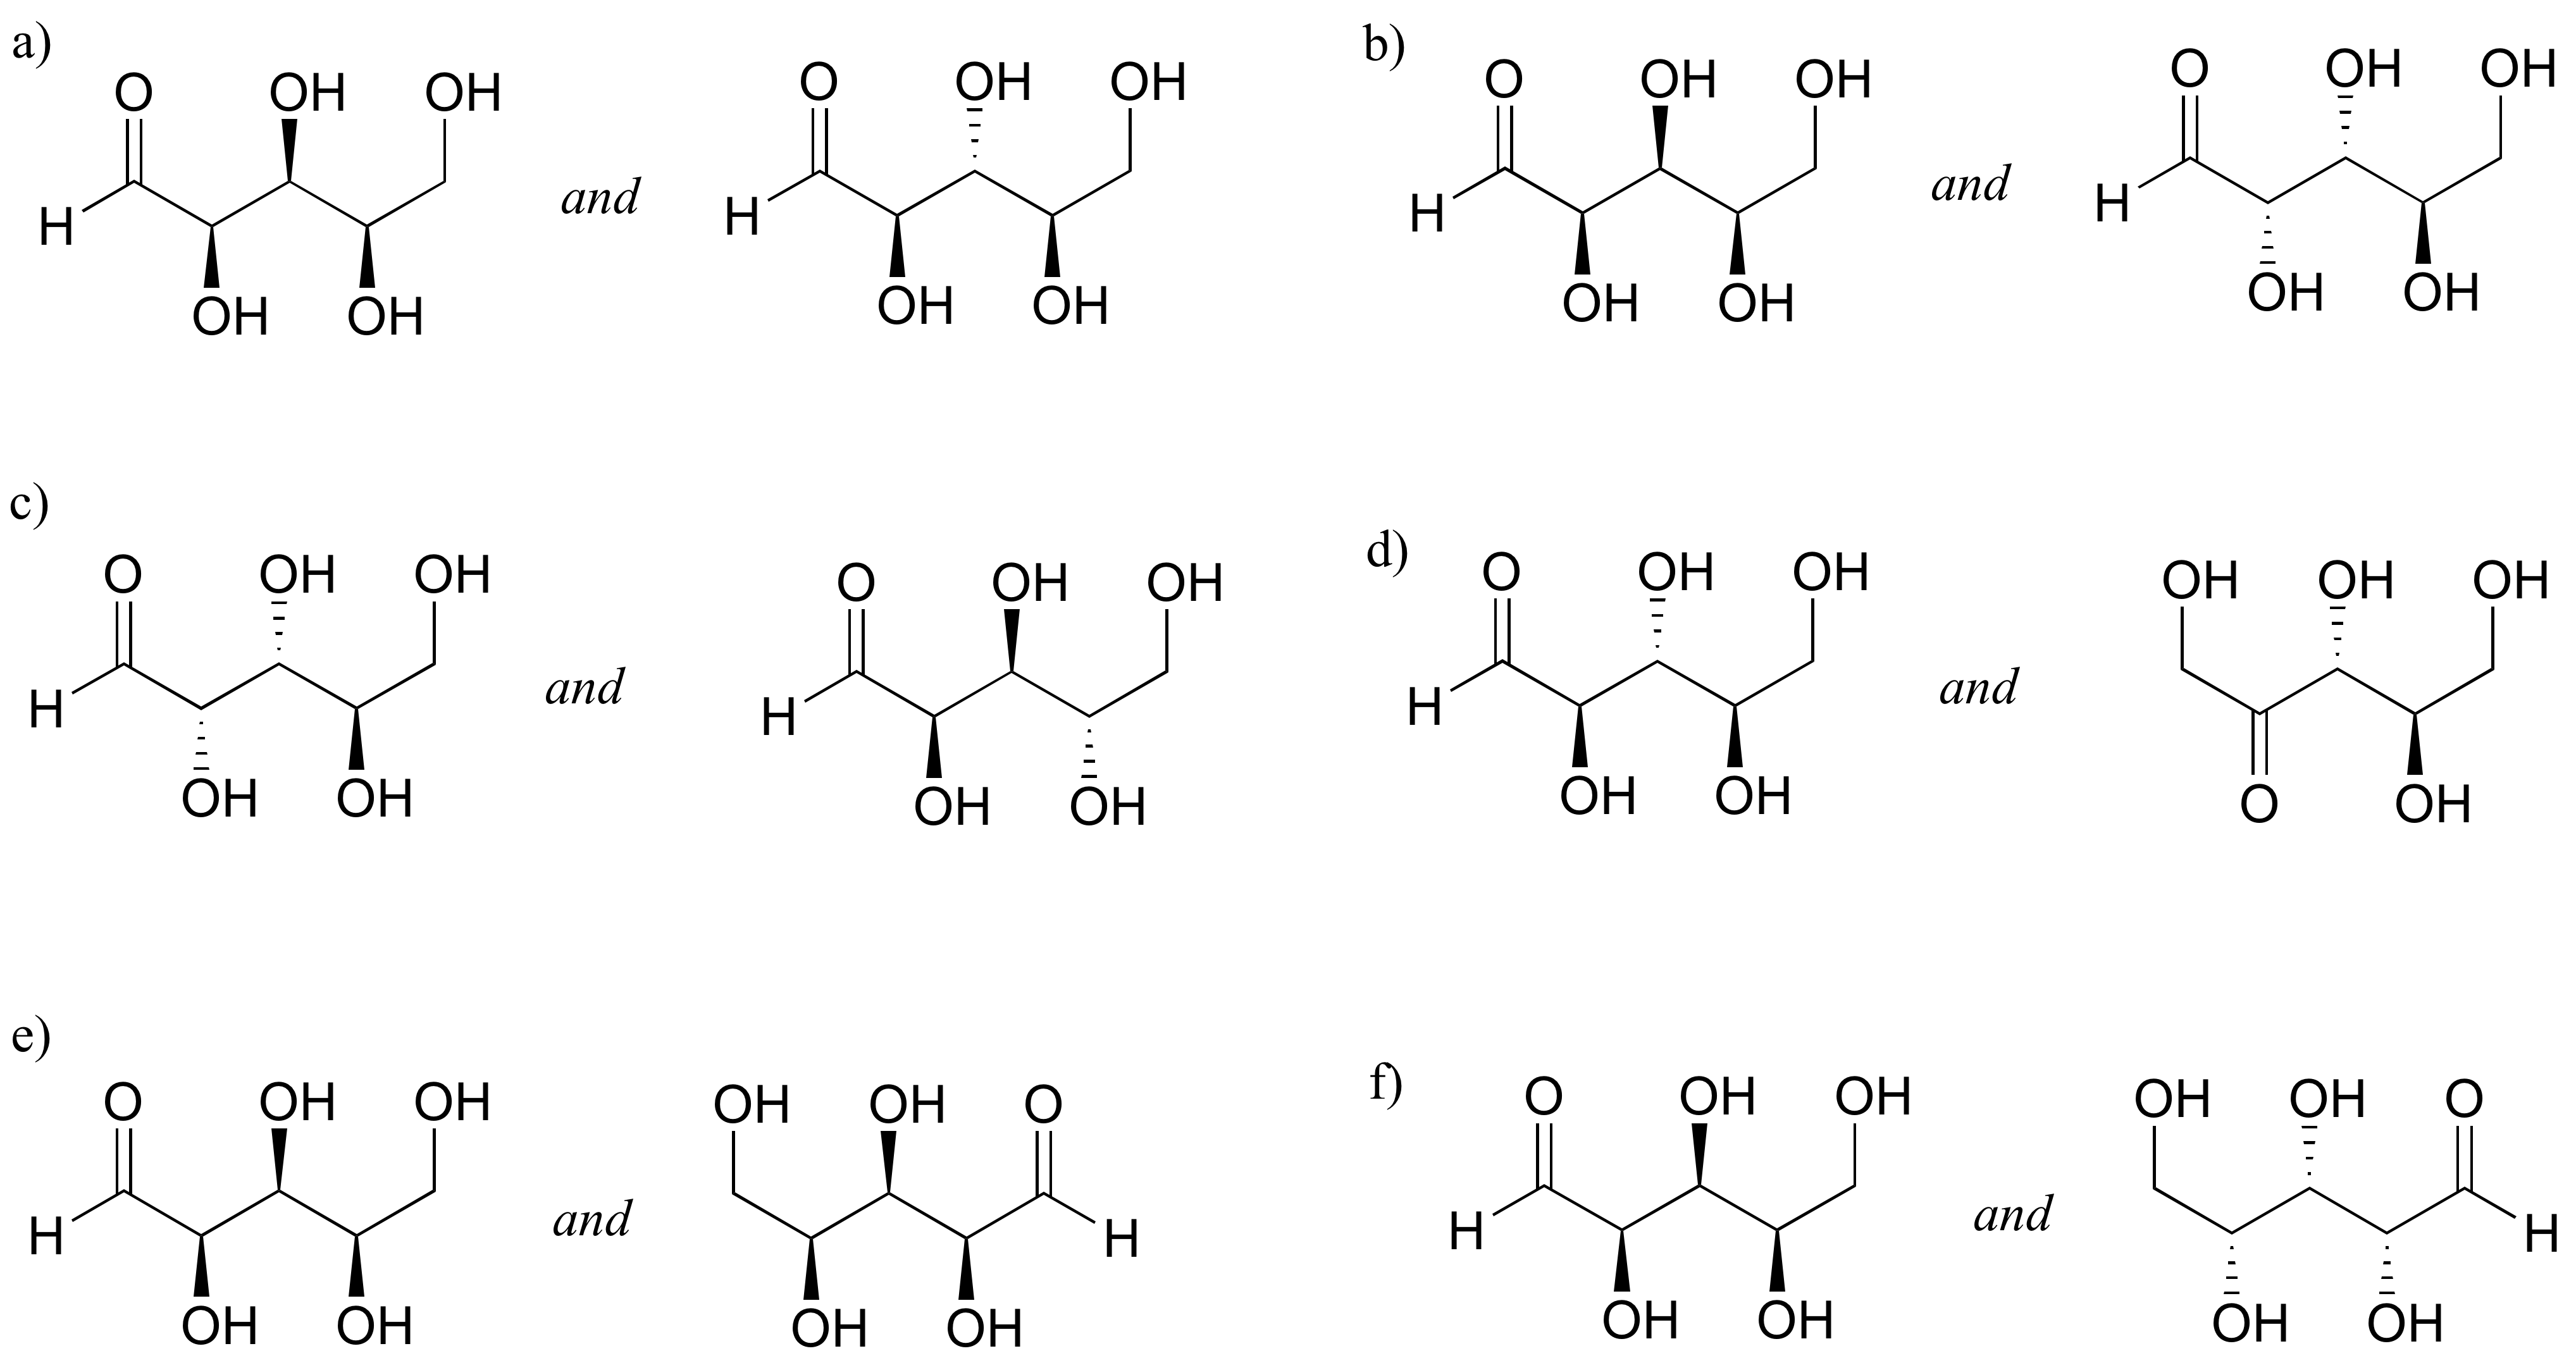 Seis conjuntos de moléculas etiquetadas de la a a la f.